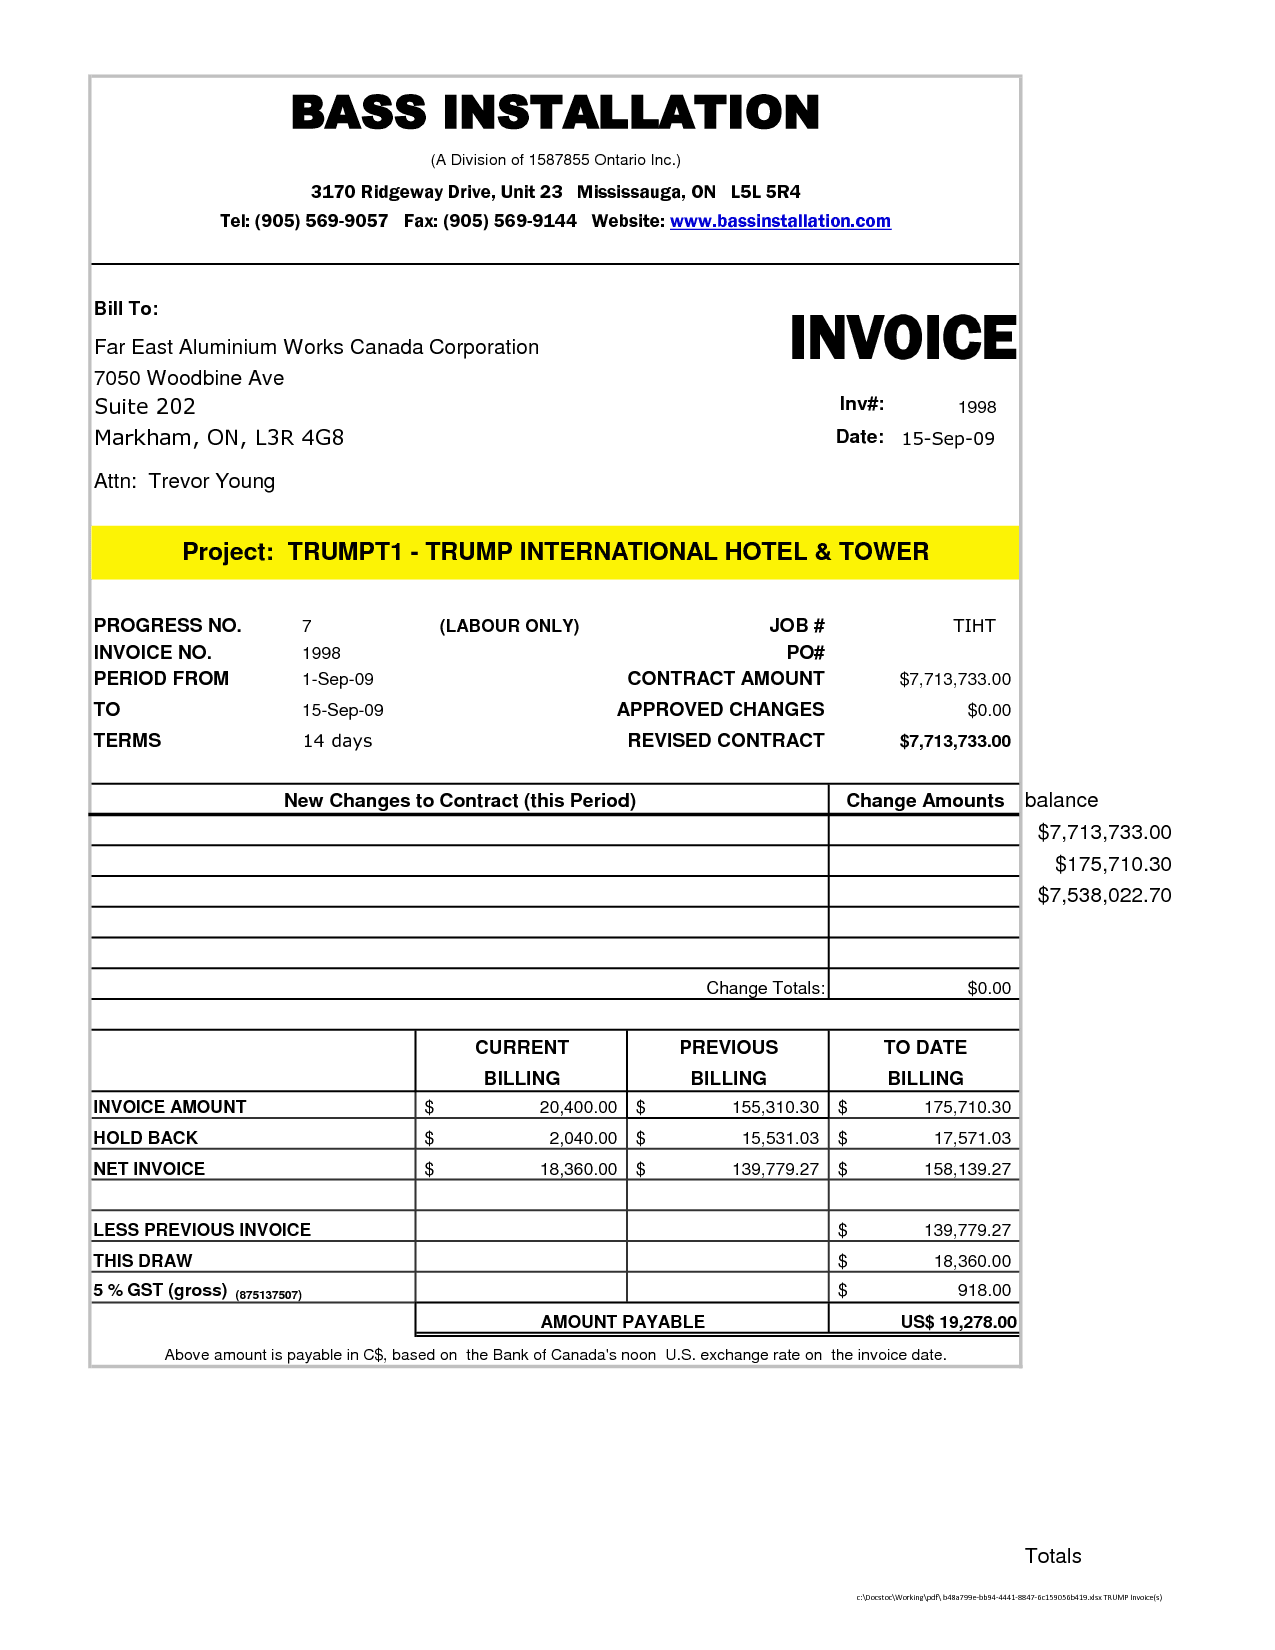 intuit professional invoice template quickbooks